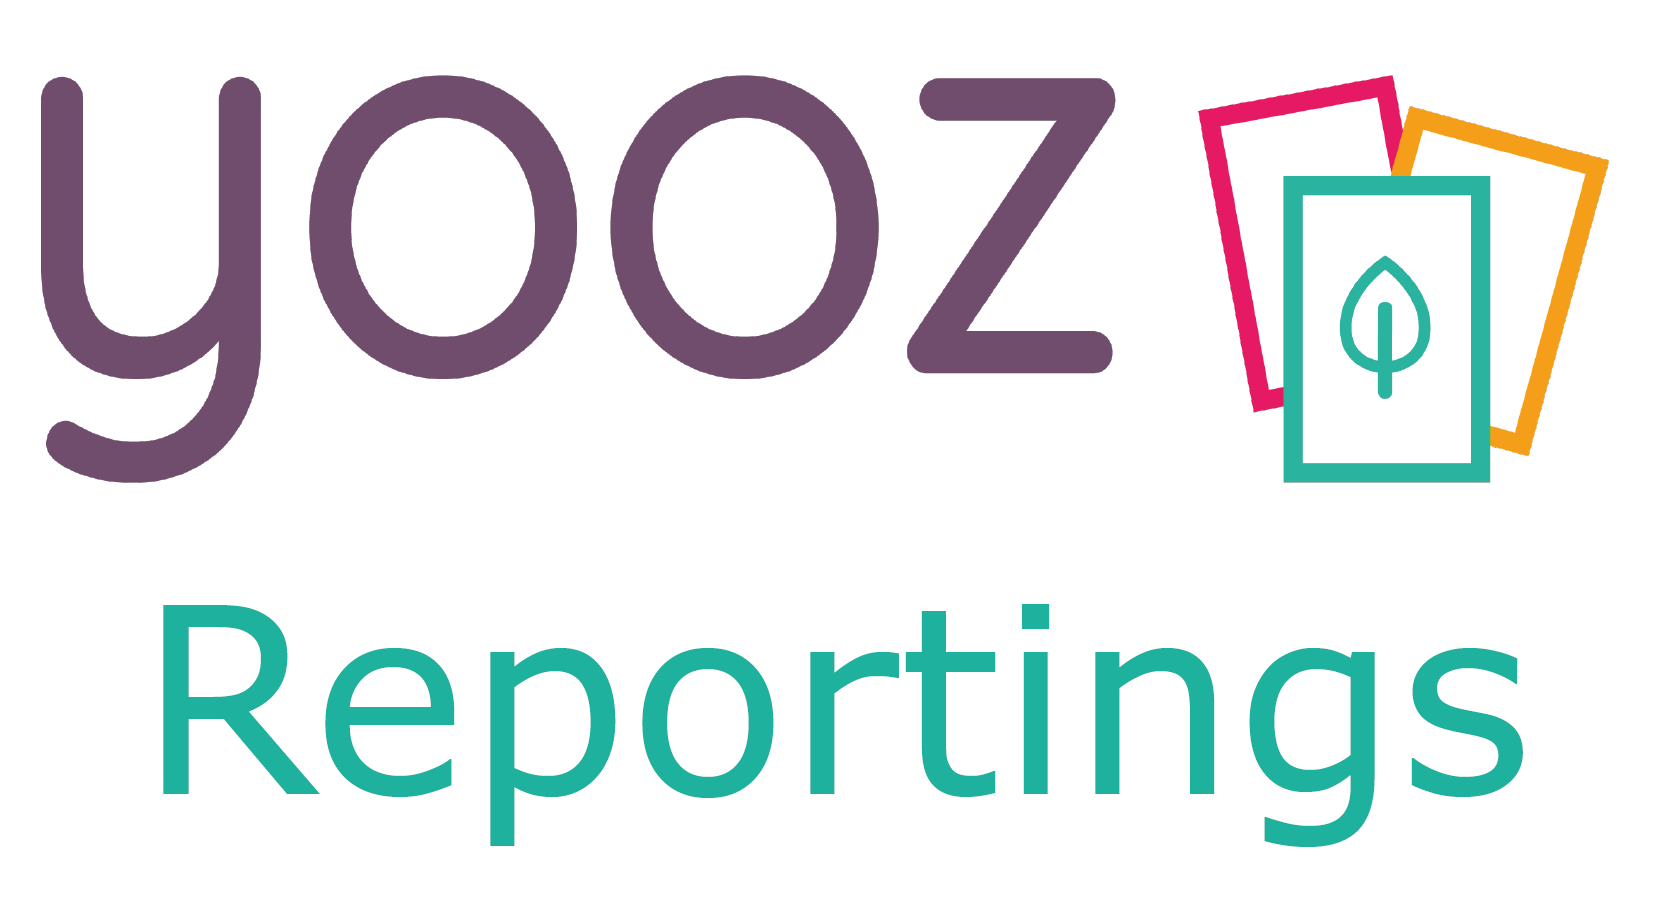 Créer vos reportings financiers temps réel avec YoozReports